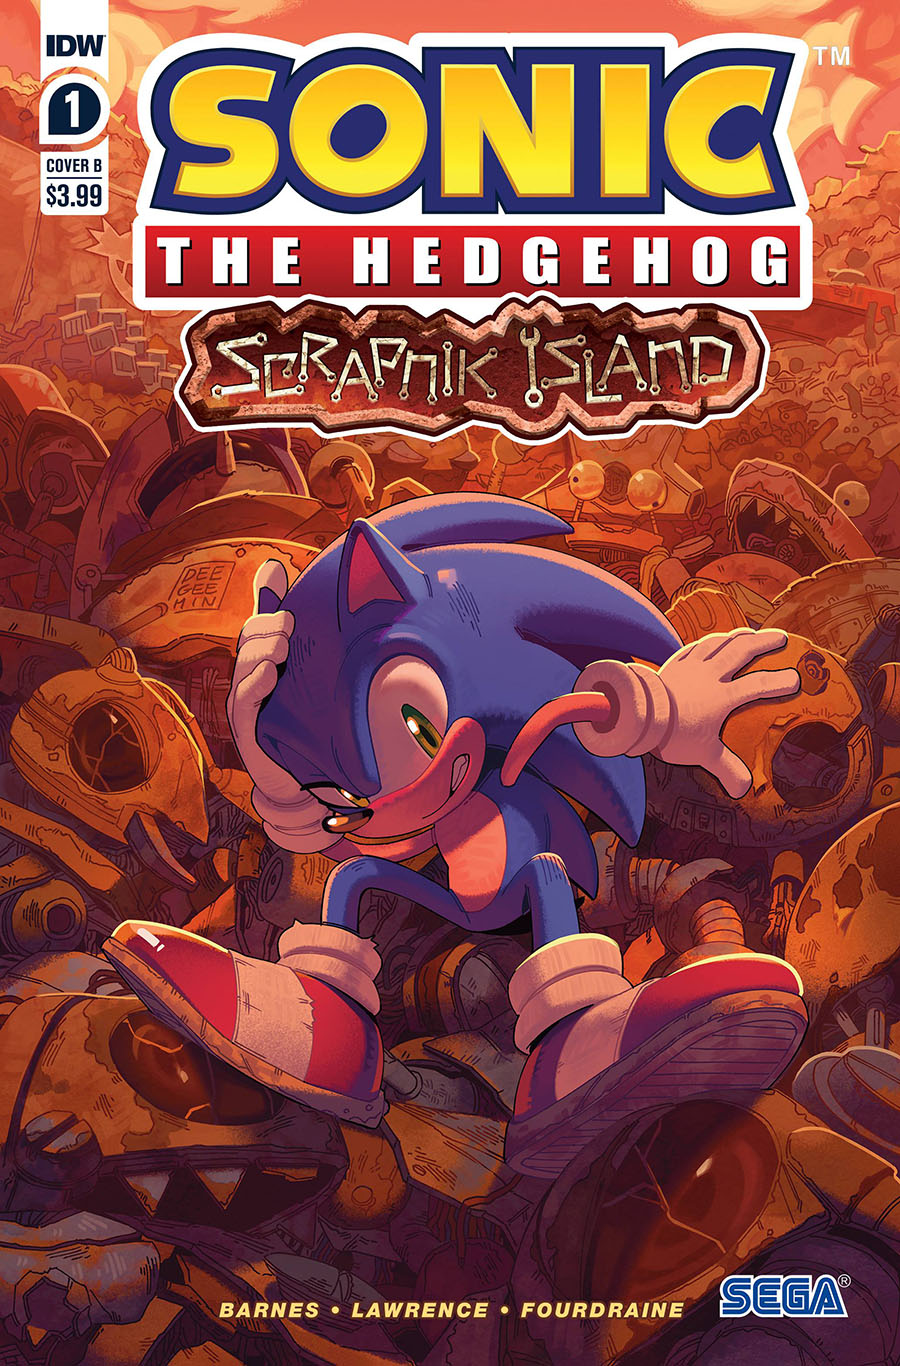 Sonic the Hedgehog: Scrapnik Island #1 - 2022 Online Exclusive